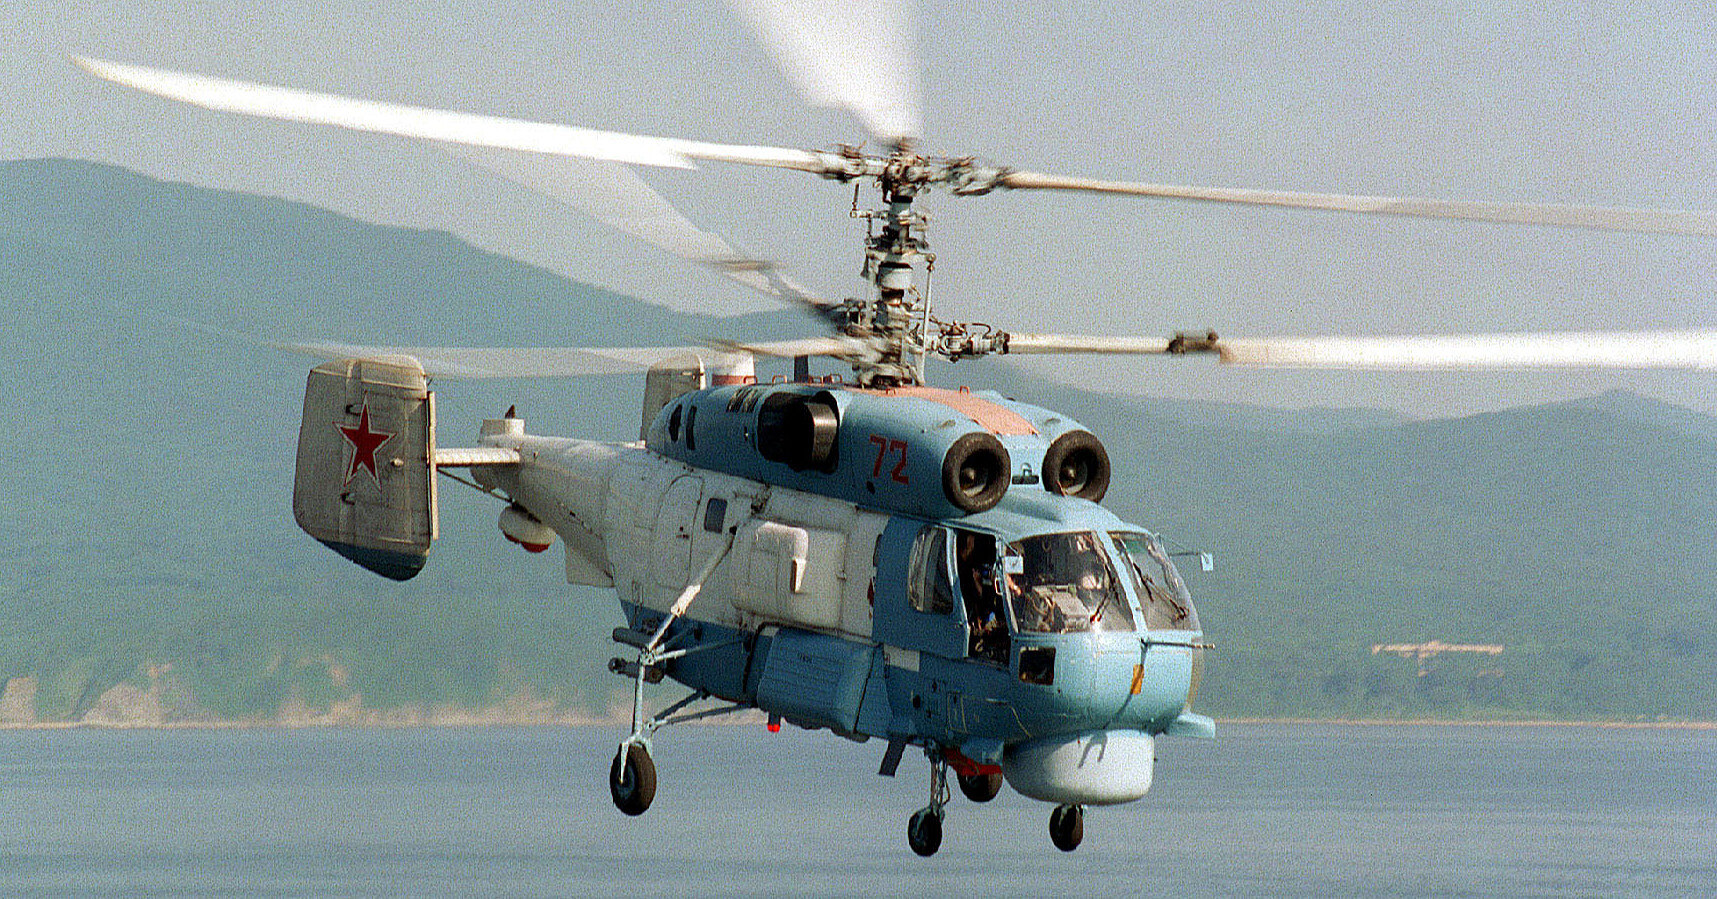 Українські ВМС повідомили про знищення вертольота Ка-27 у Криму